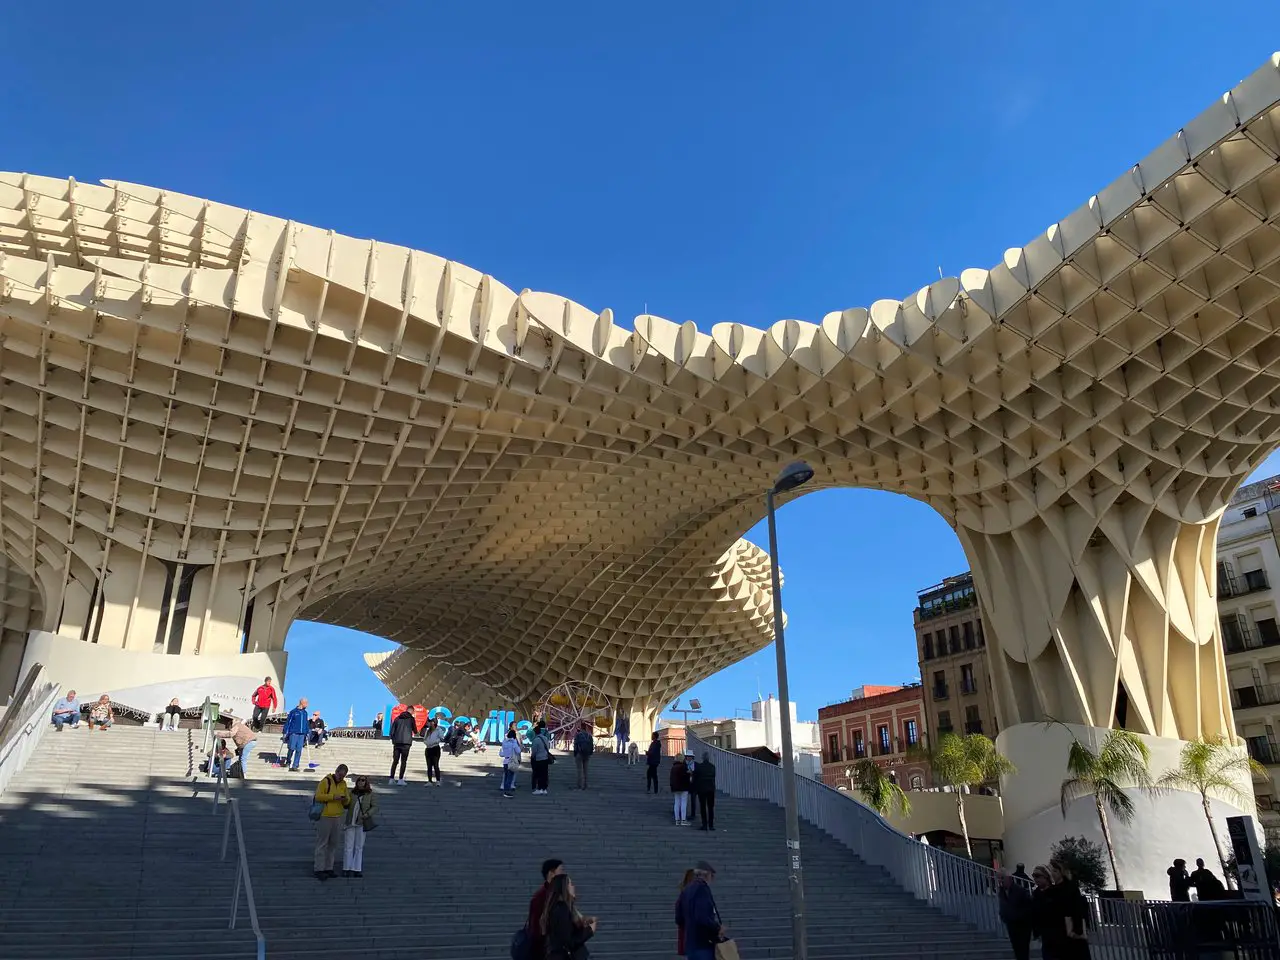 Setas de Sevilla, a large wooden canopy structure.